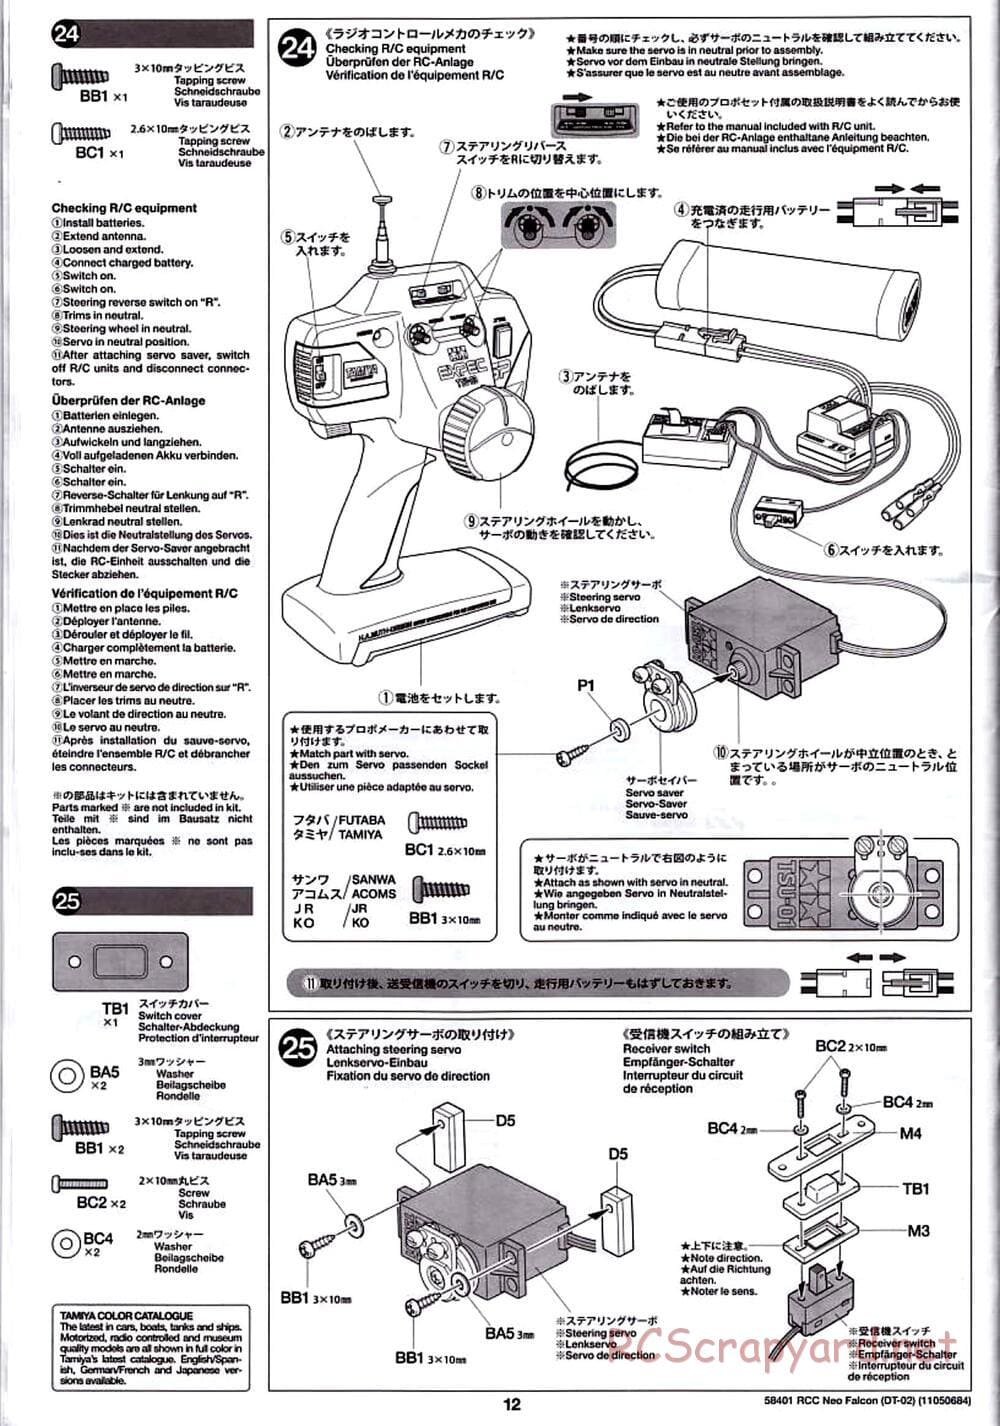 Tamiya - Neo Falcon Chassis - Manual - Page 12